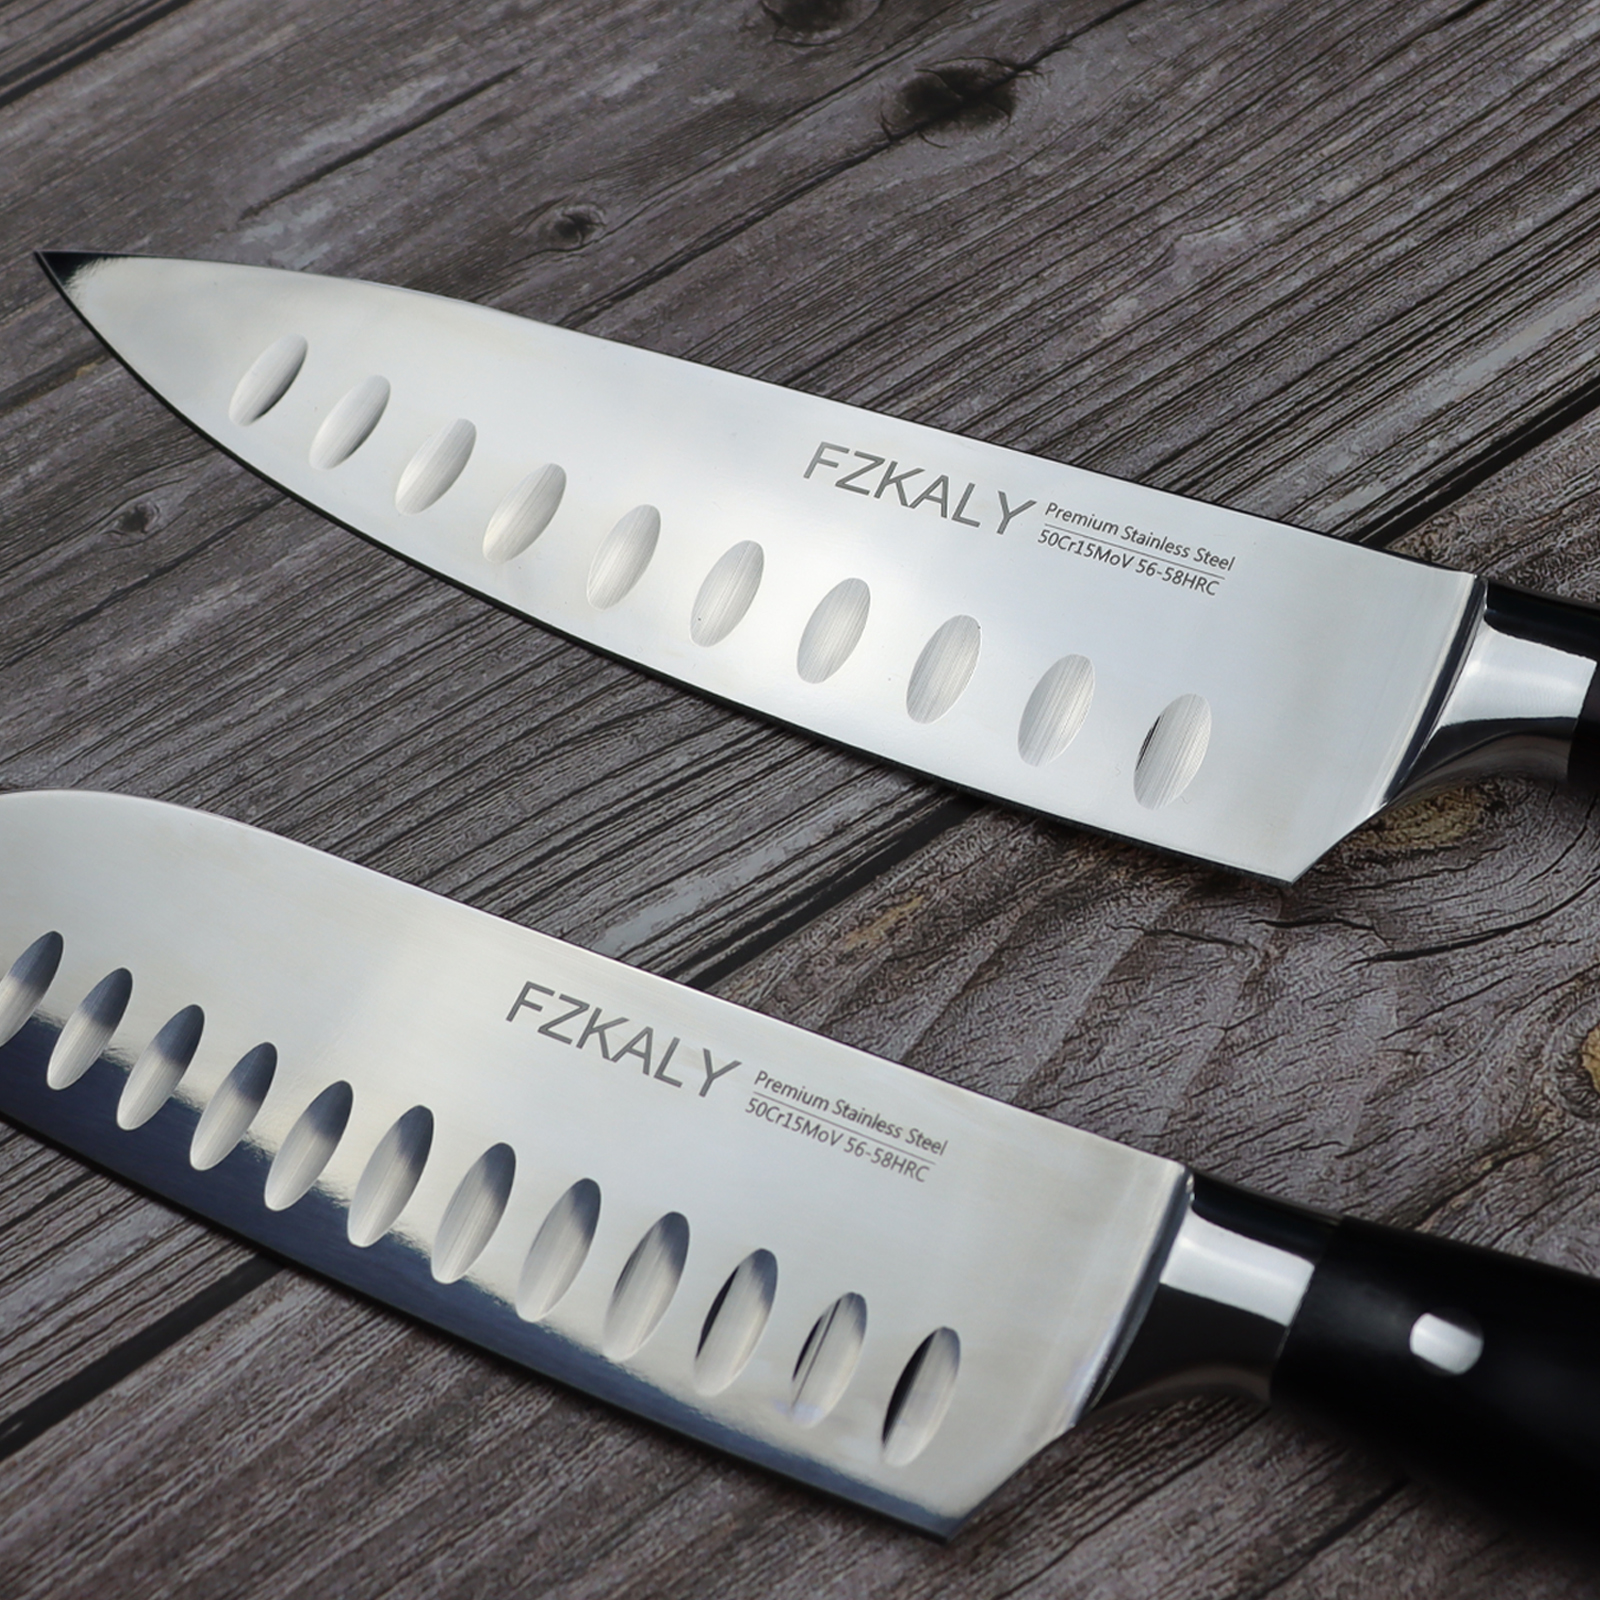 Chef Knives, Kitchen Knives, Fzkaly Knives